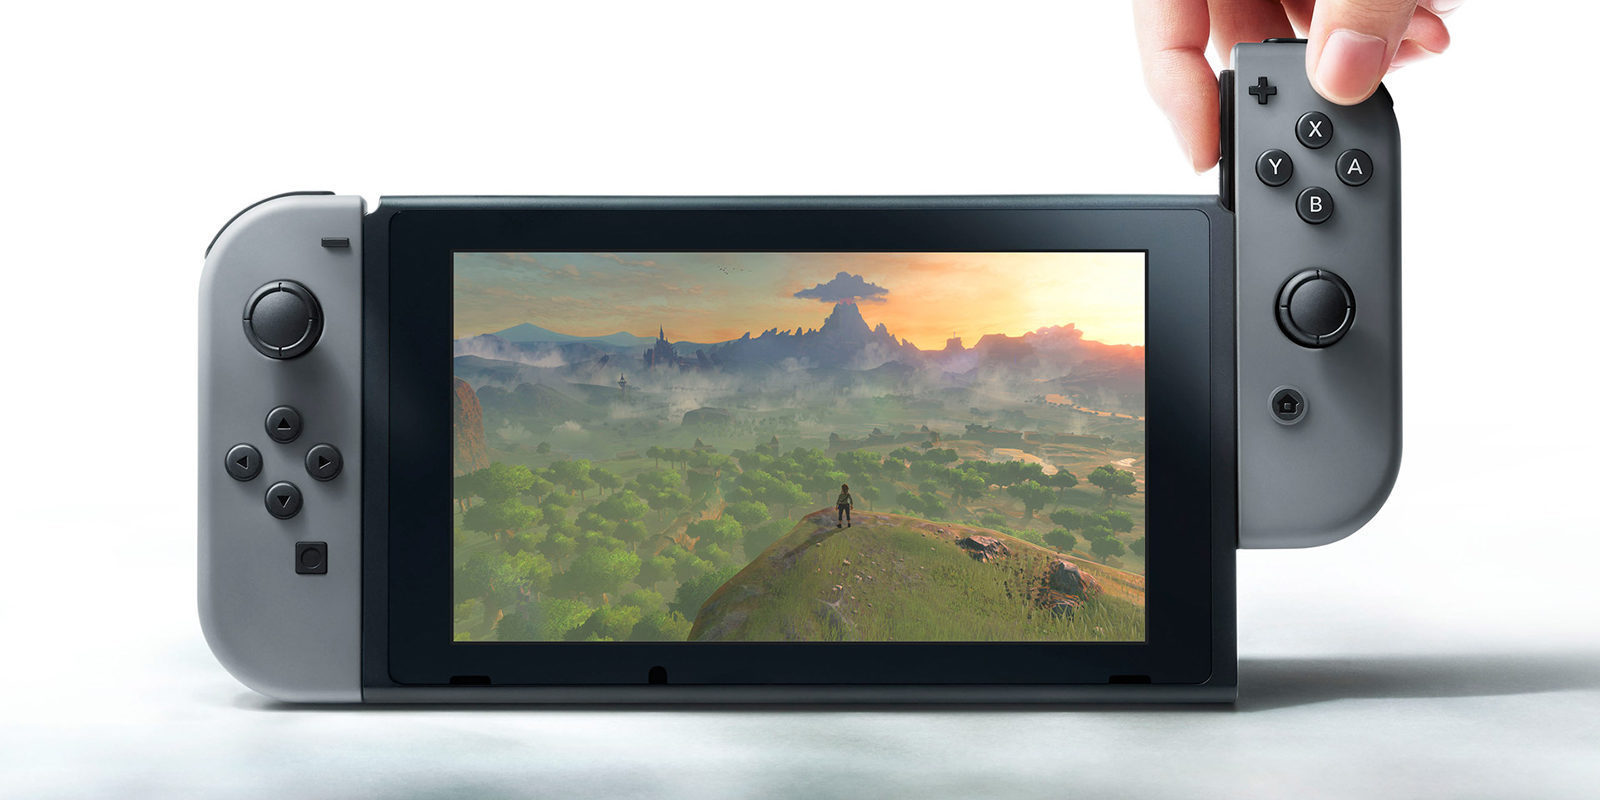 Someten Nintendo Switch a un test de resistencia, ¿sobrevivirá la conosla?